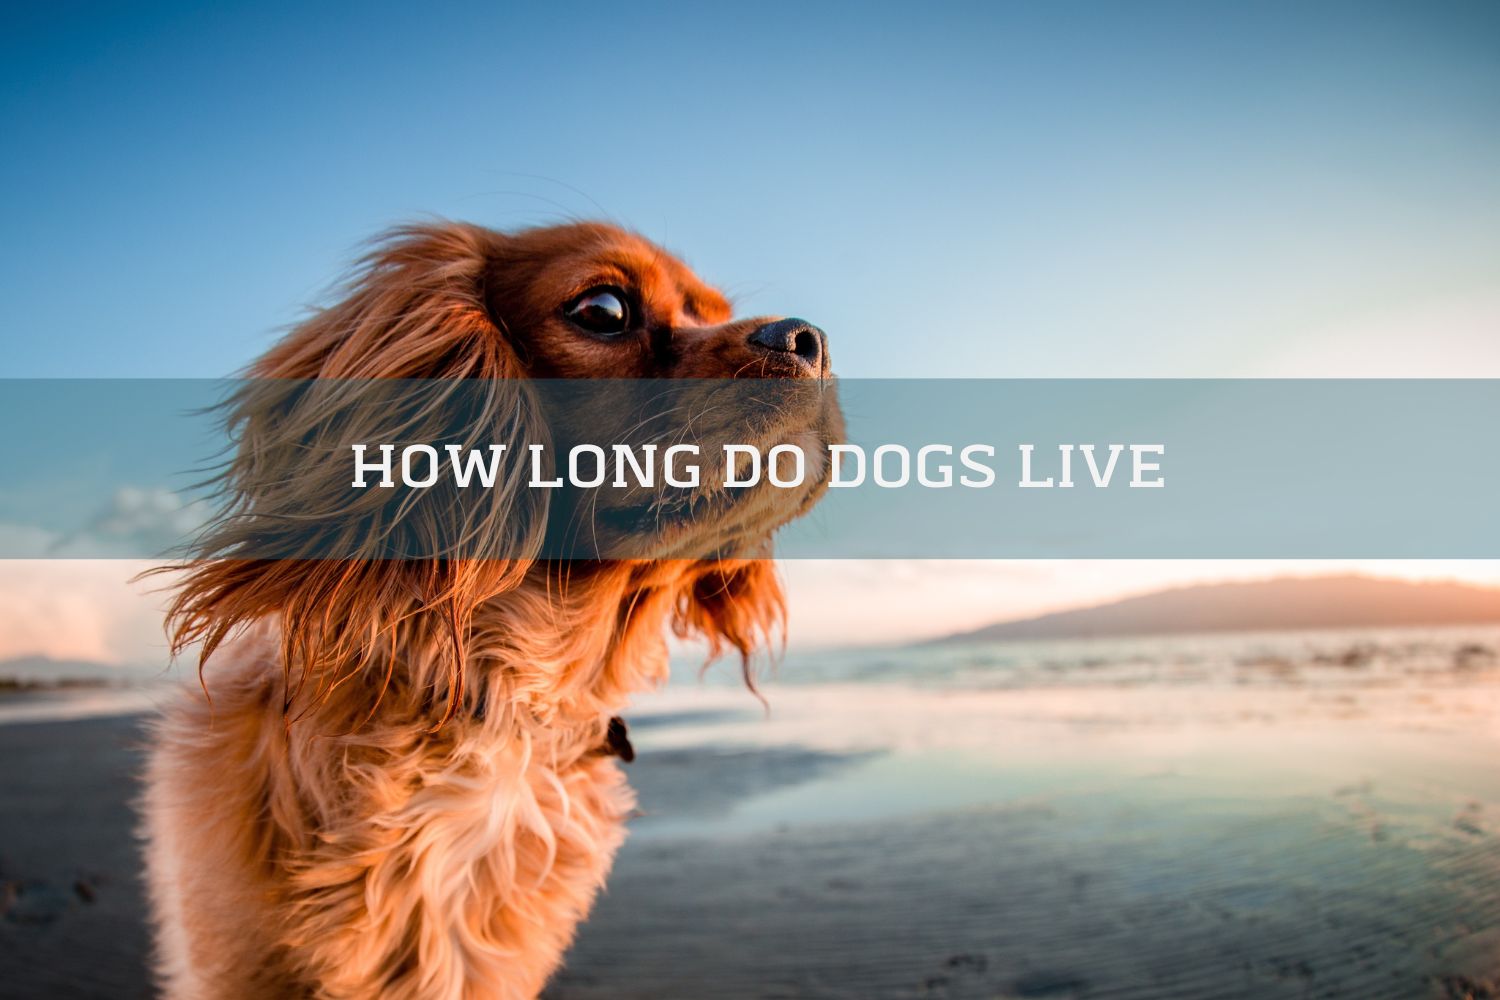 dog lifespan how long do dogs live